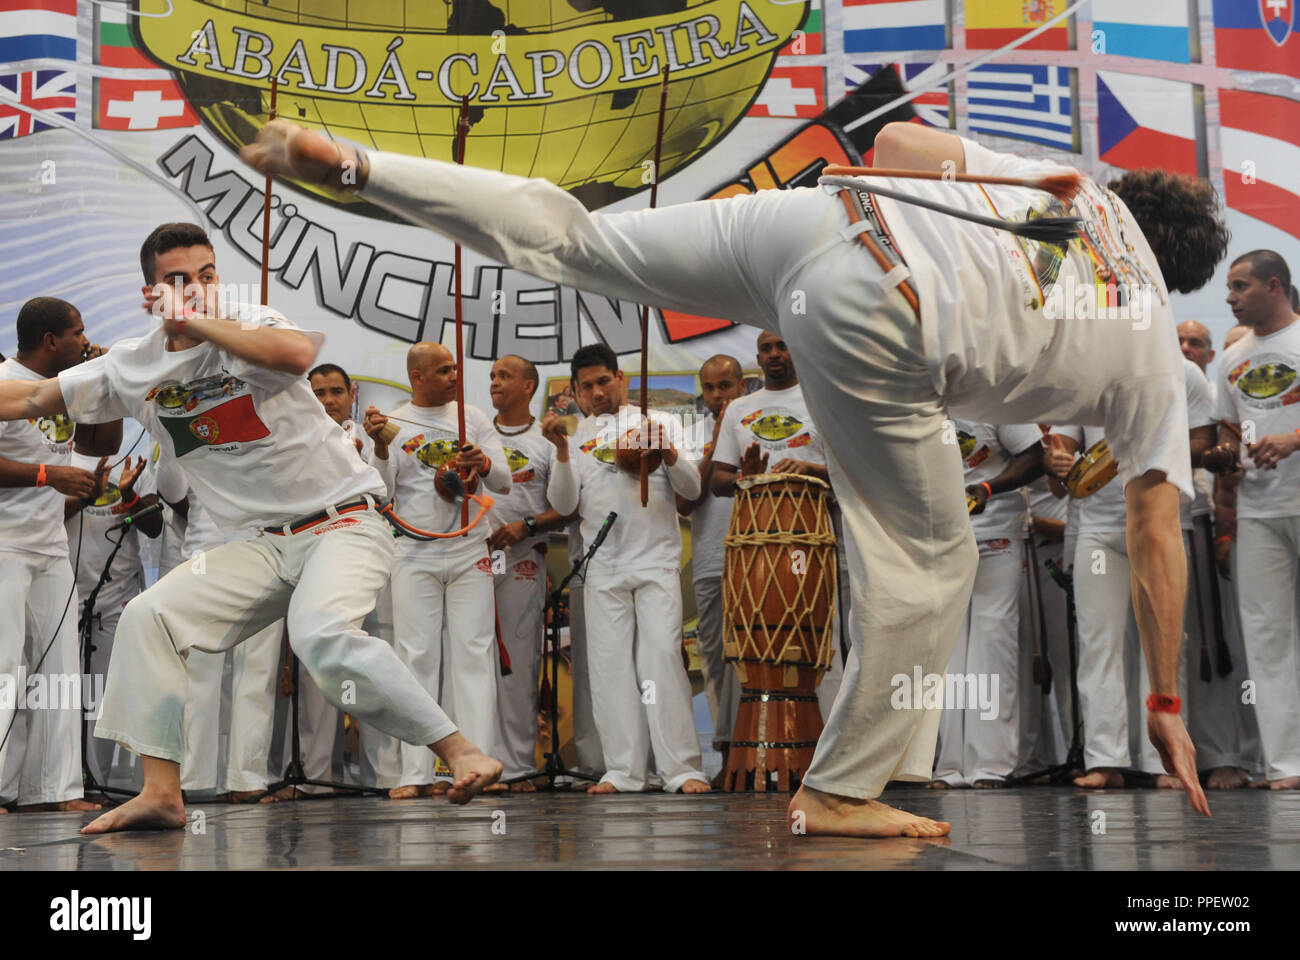 Semifinali e finali di domenica al XV Campionato Europeo Abada Capoeira nella hall di SV Muenchen in Laim. Foto Stock